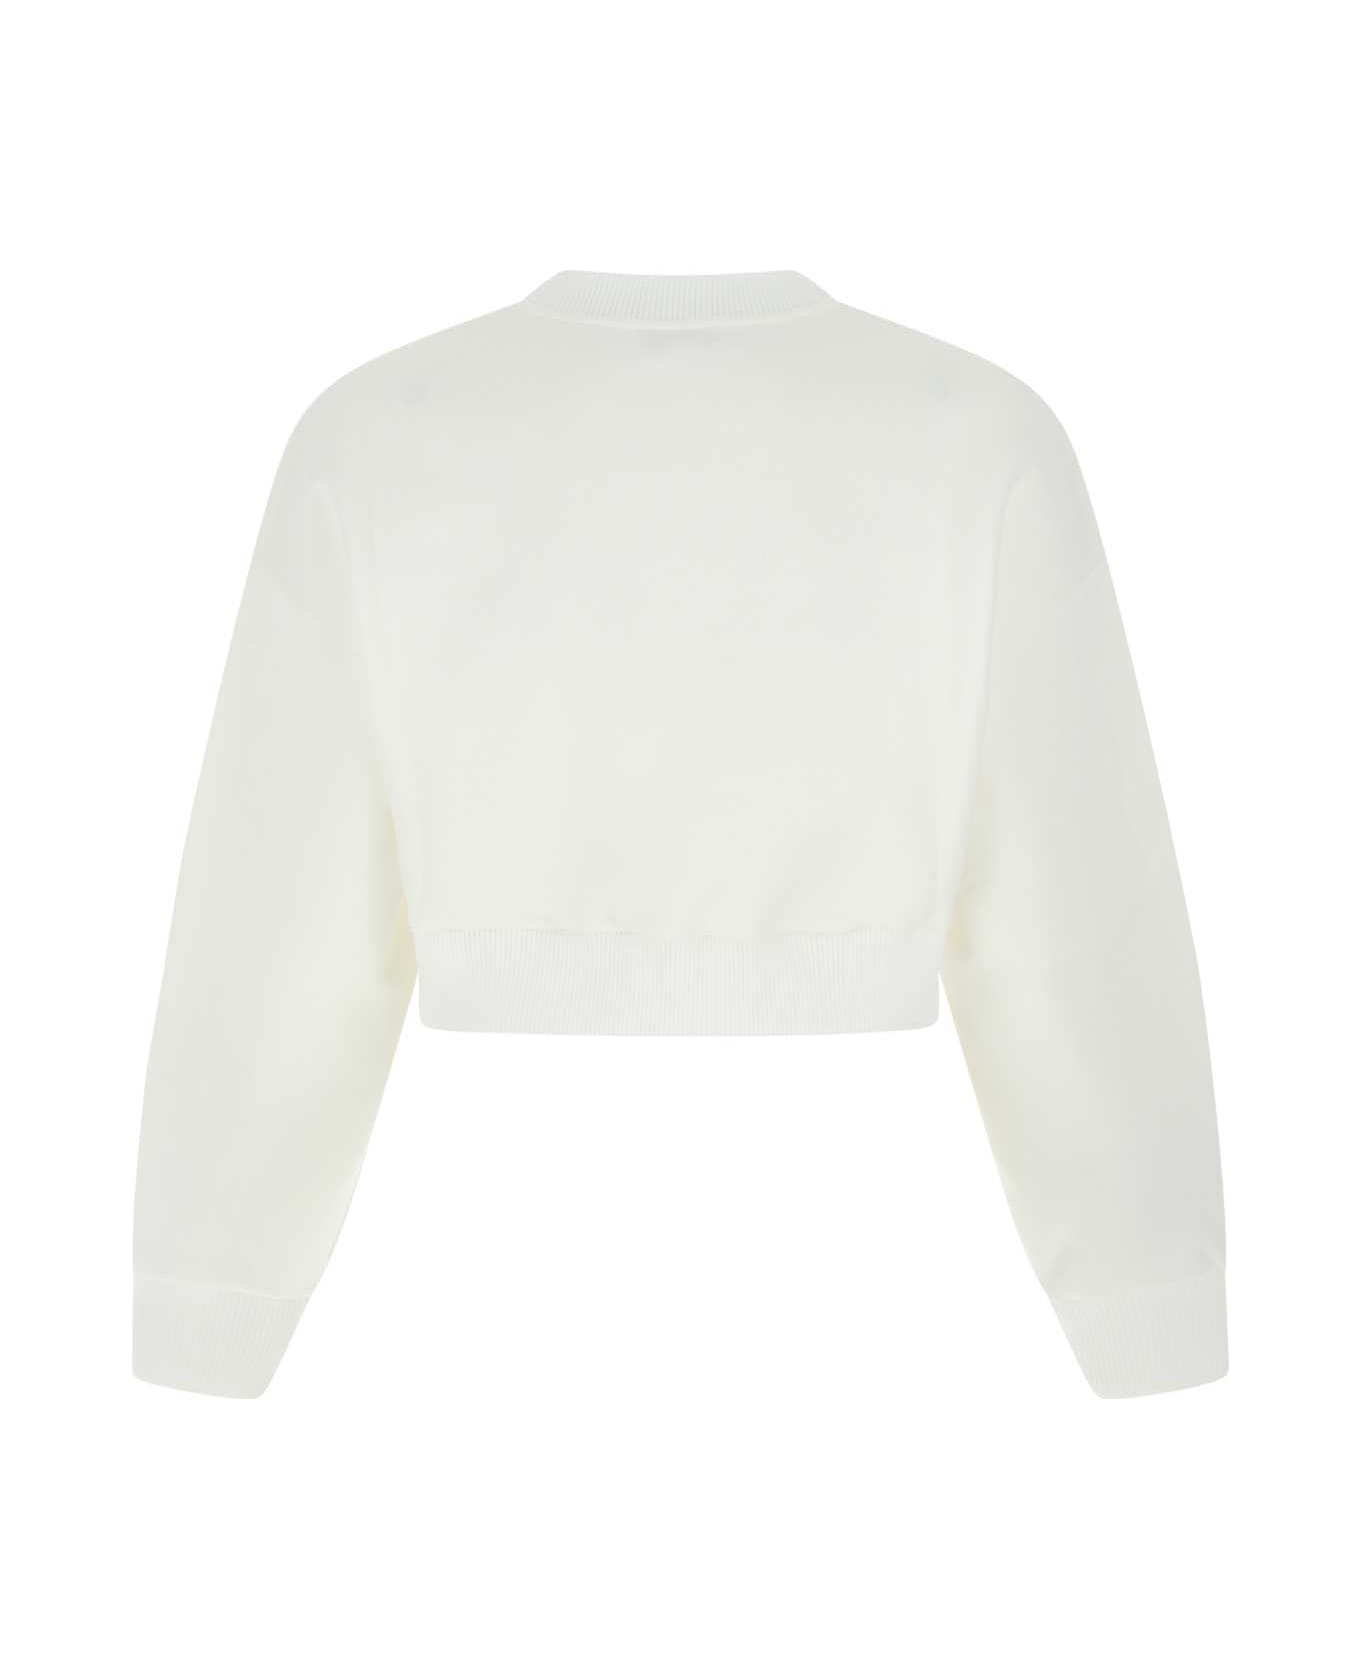 Alexander McQueen White Cotton Blend Sweatshirt - 9000 フリース